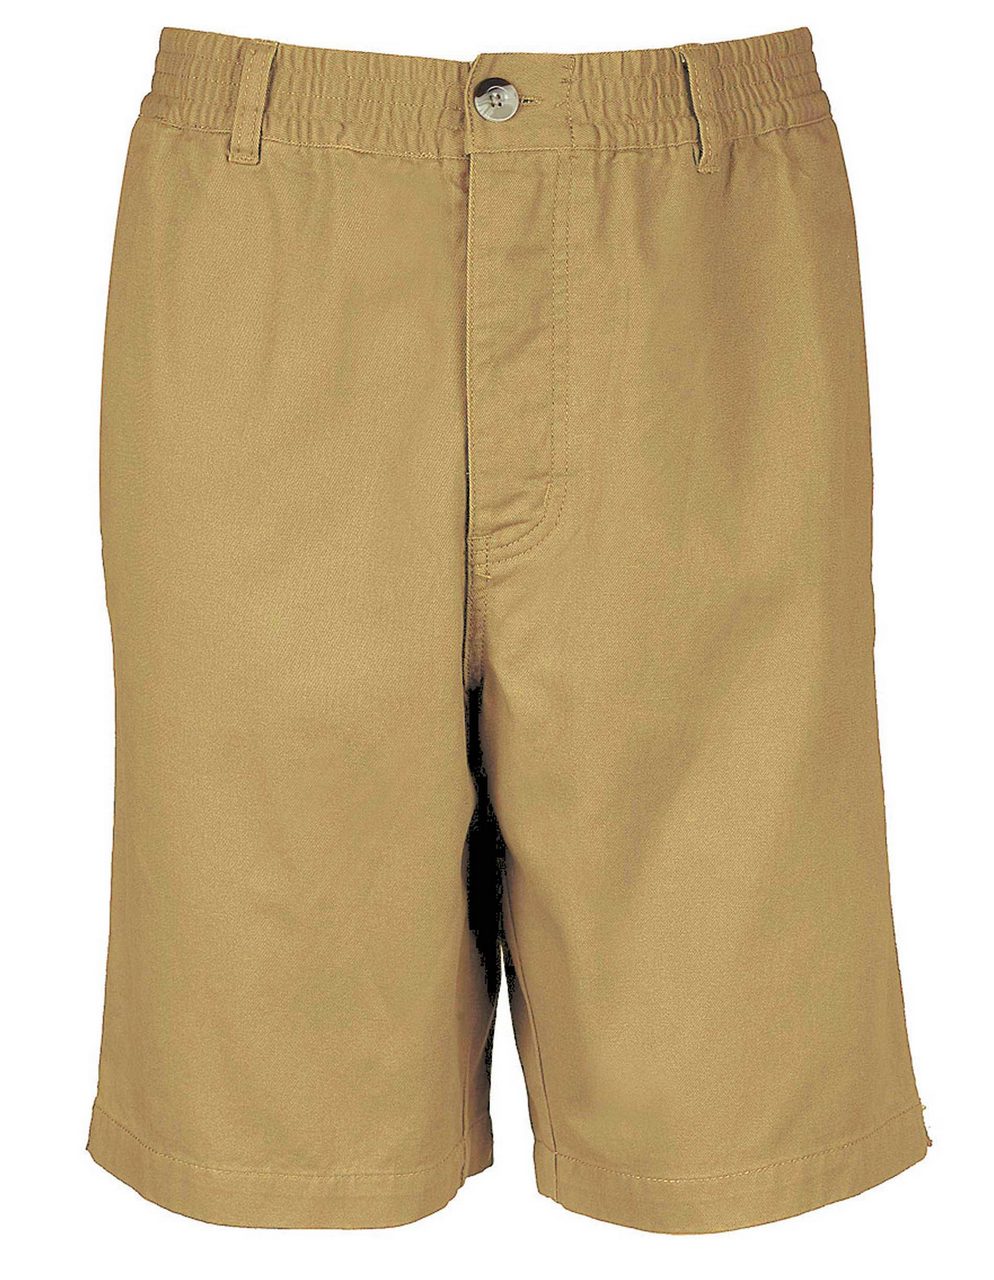 Pantaloni scurti pentru barbati confectionati din bumbac cu elastic in talie B526